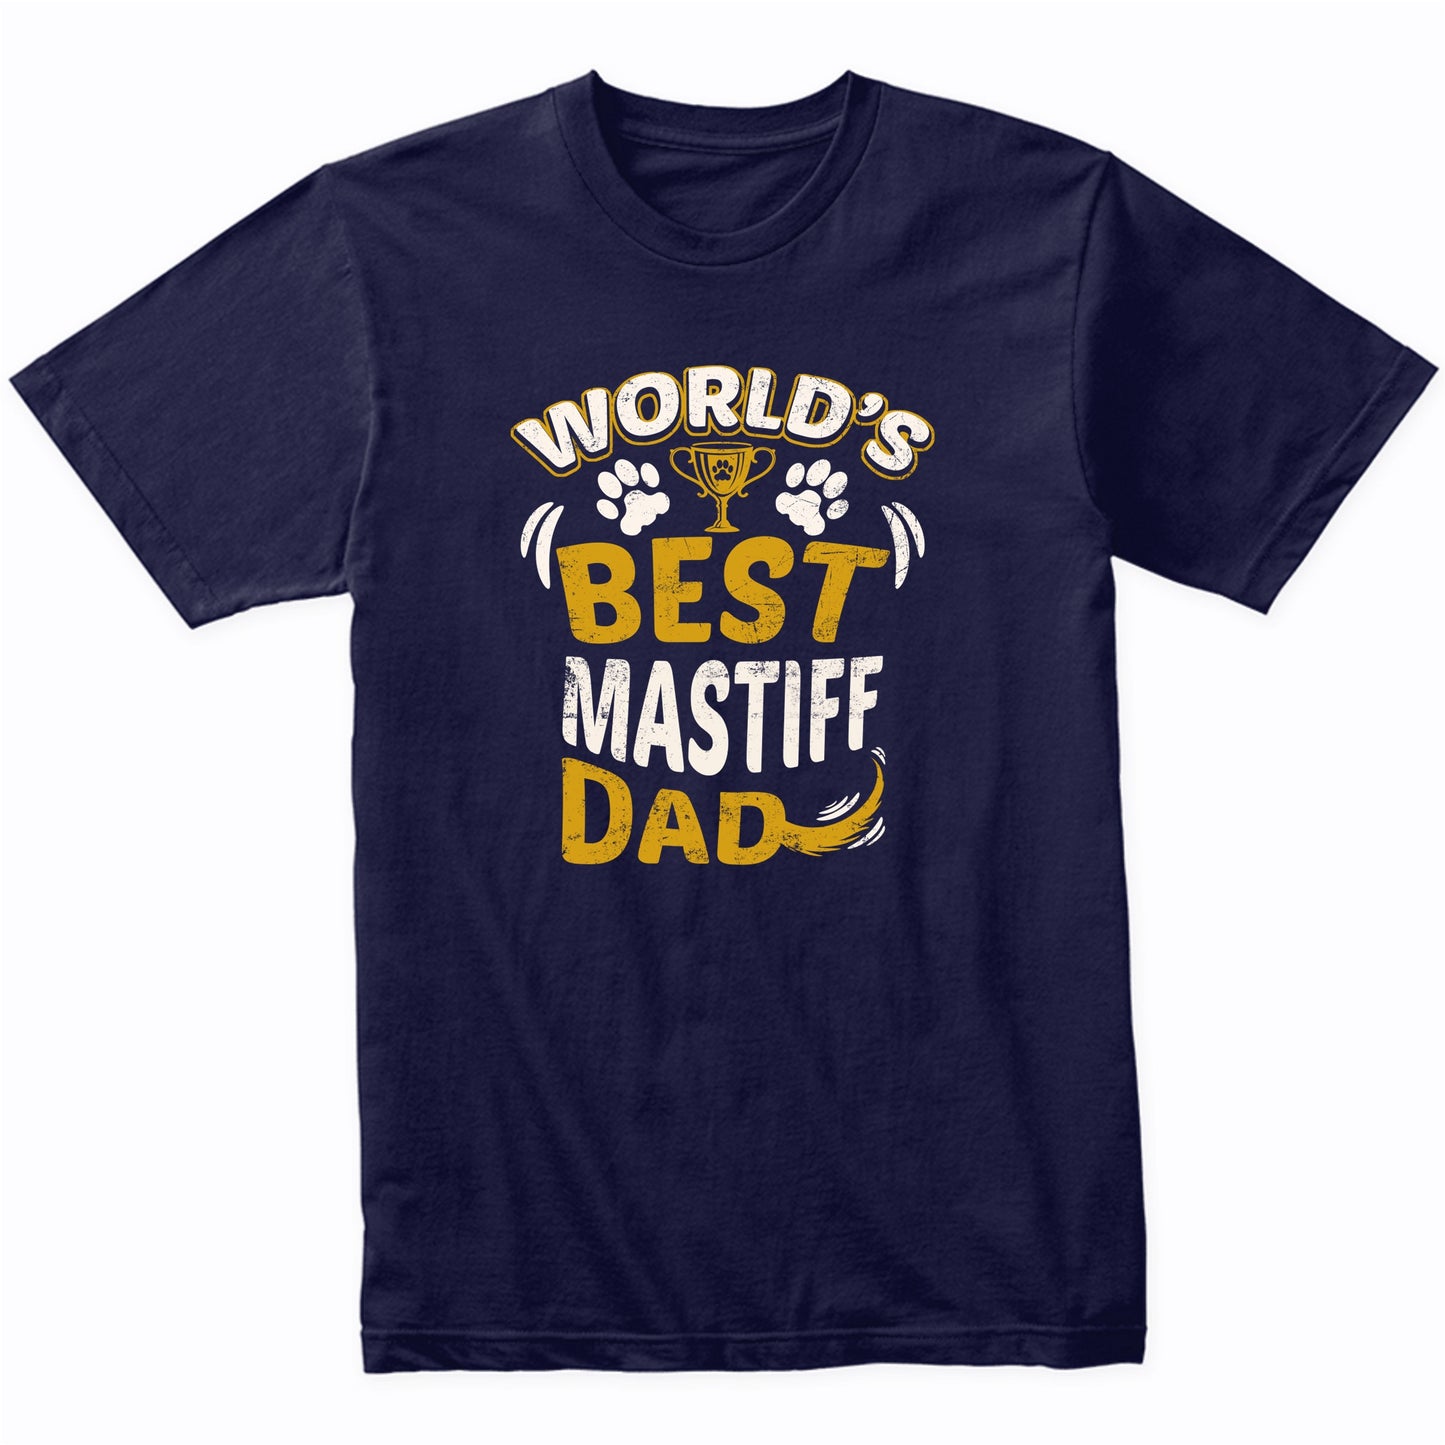 World's Best Mastiff Dad Graphic T-Shirt